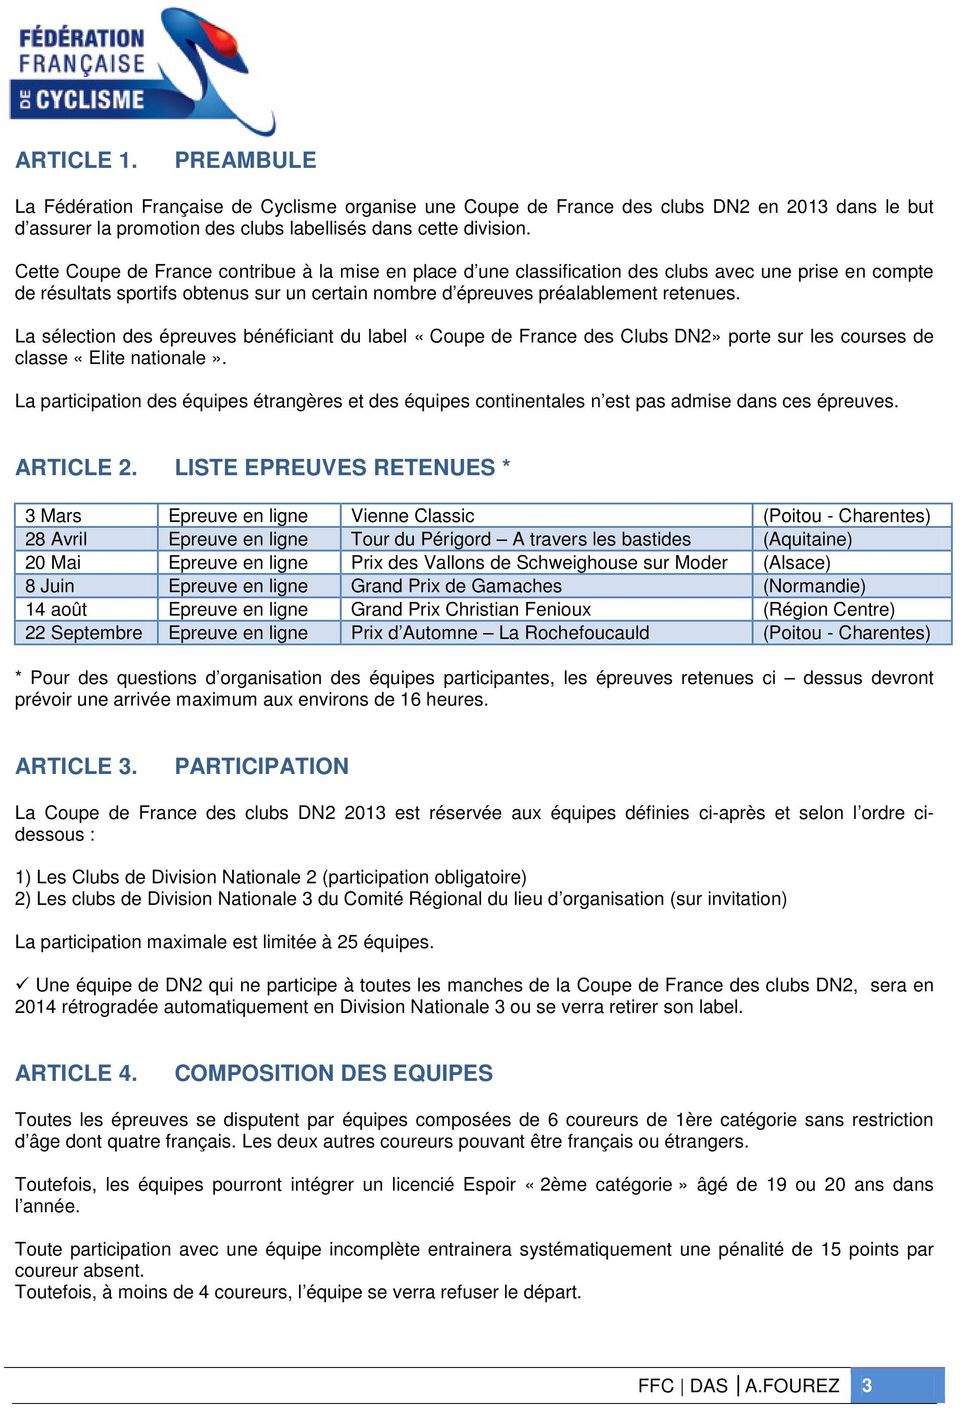 La sélection des épreuves bénéficiant du label «Coupe de France des Clubs DN2» porte sur les courses de classe «Elite nationale».